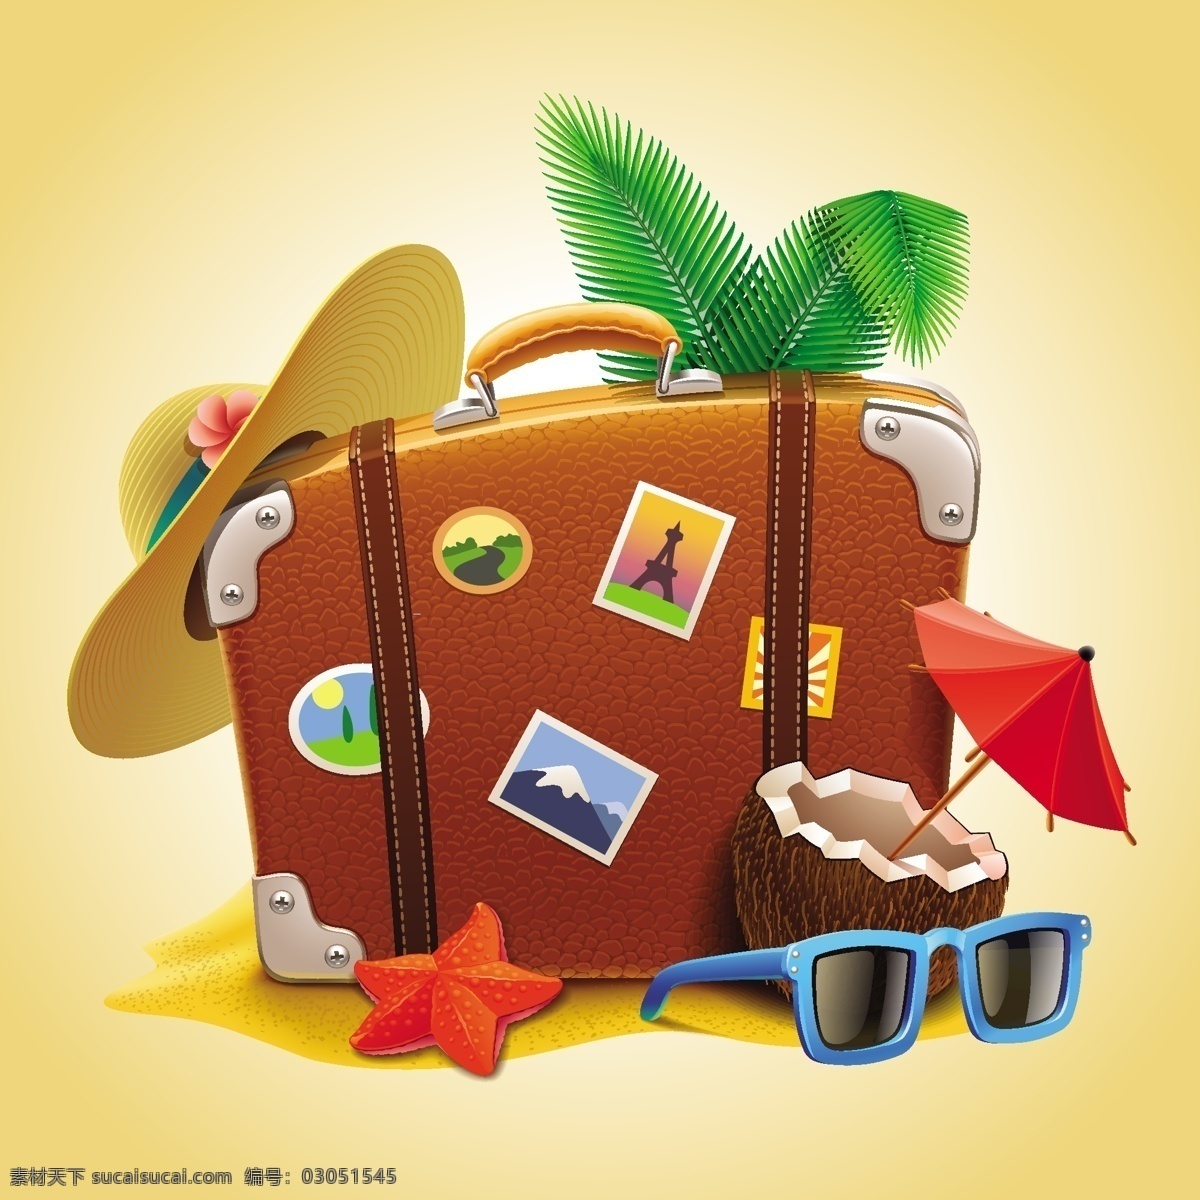 夏日 旅游 广告 背景 路牌 旅游素材 木板 夏日促销 行李箱 休闲旅游 雨伞 矢量图